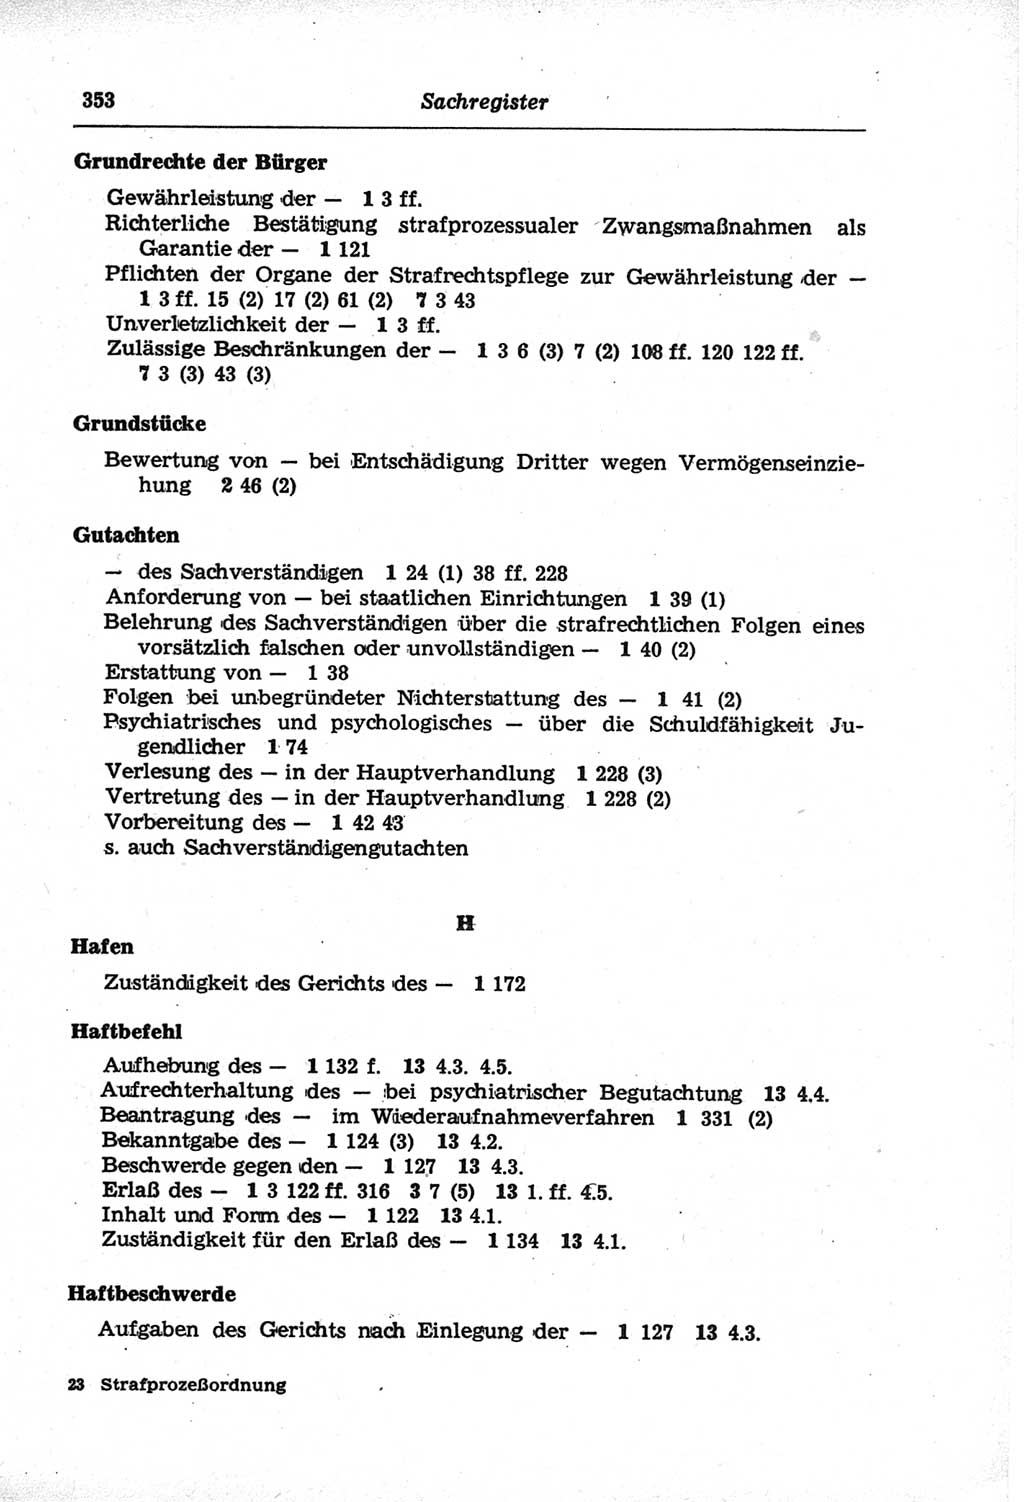 Strafprozeßordnung (StPO) der Deutschen Demokratischen Republik (DDR) und angrenzende Gesetze und Bestimmungen 1968, Seite 353 (StPO Ges. Bstgn. DDR 1968, S. 353)